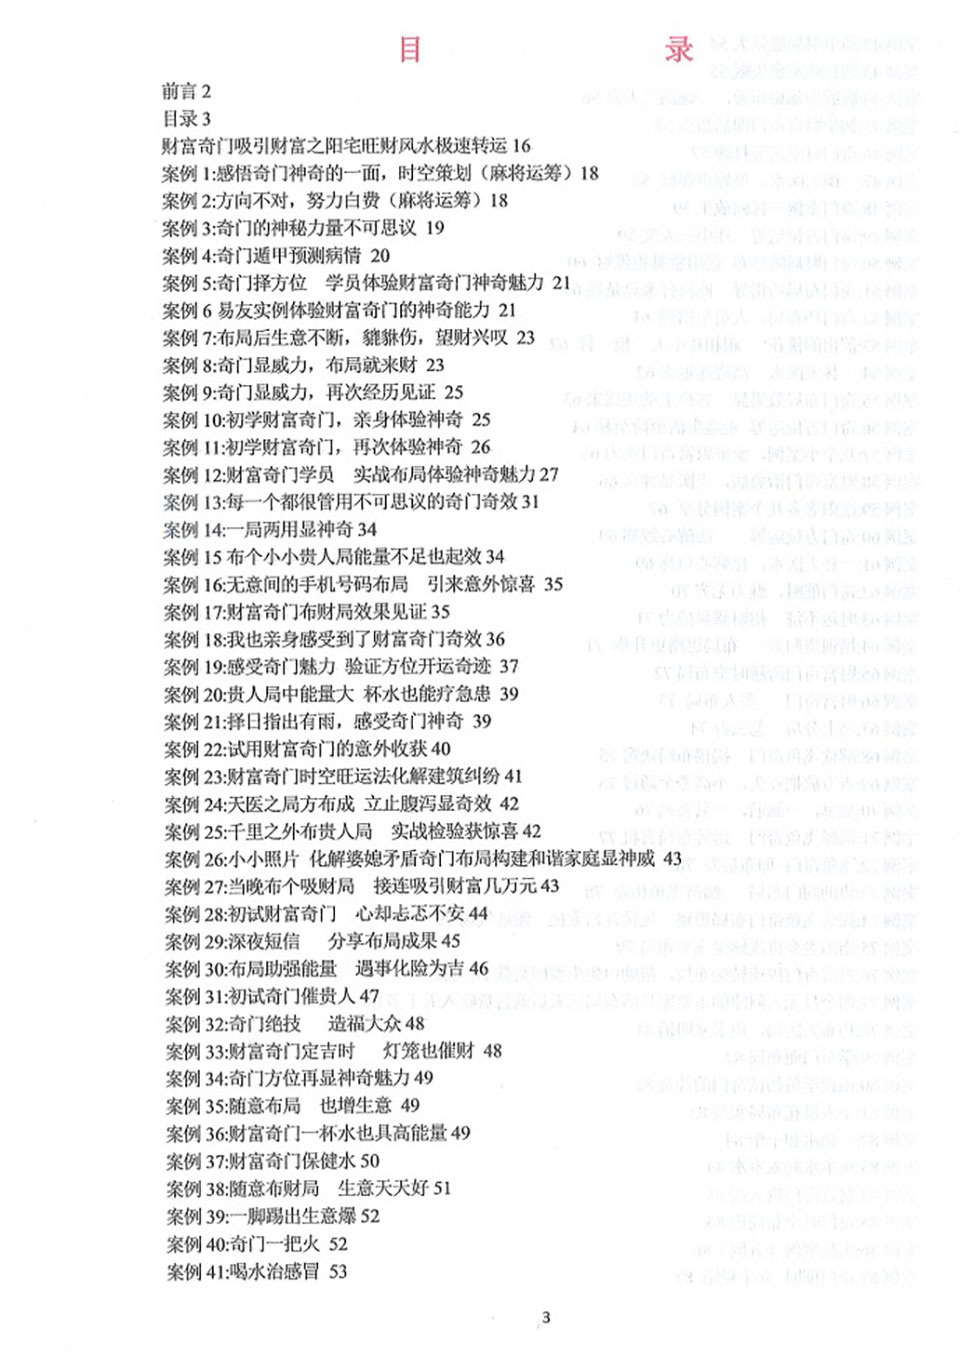 飞鱼奇门运筹秘术案例566个.pdf